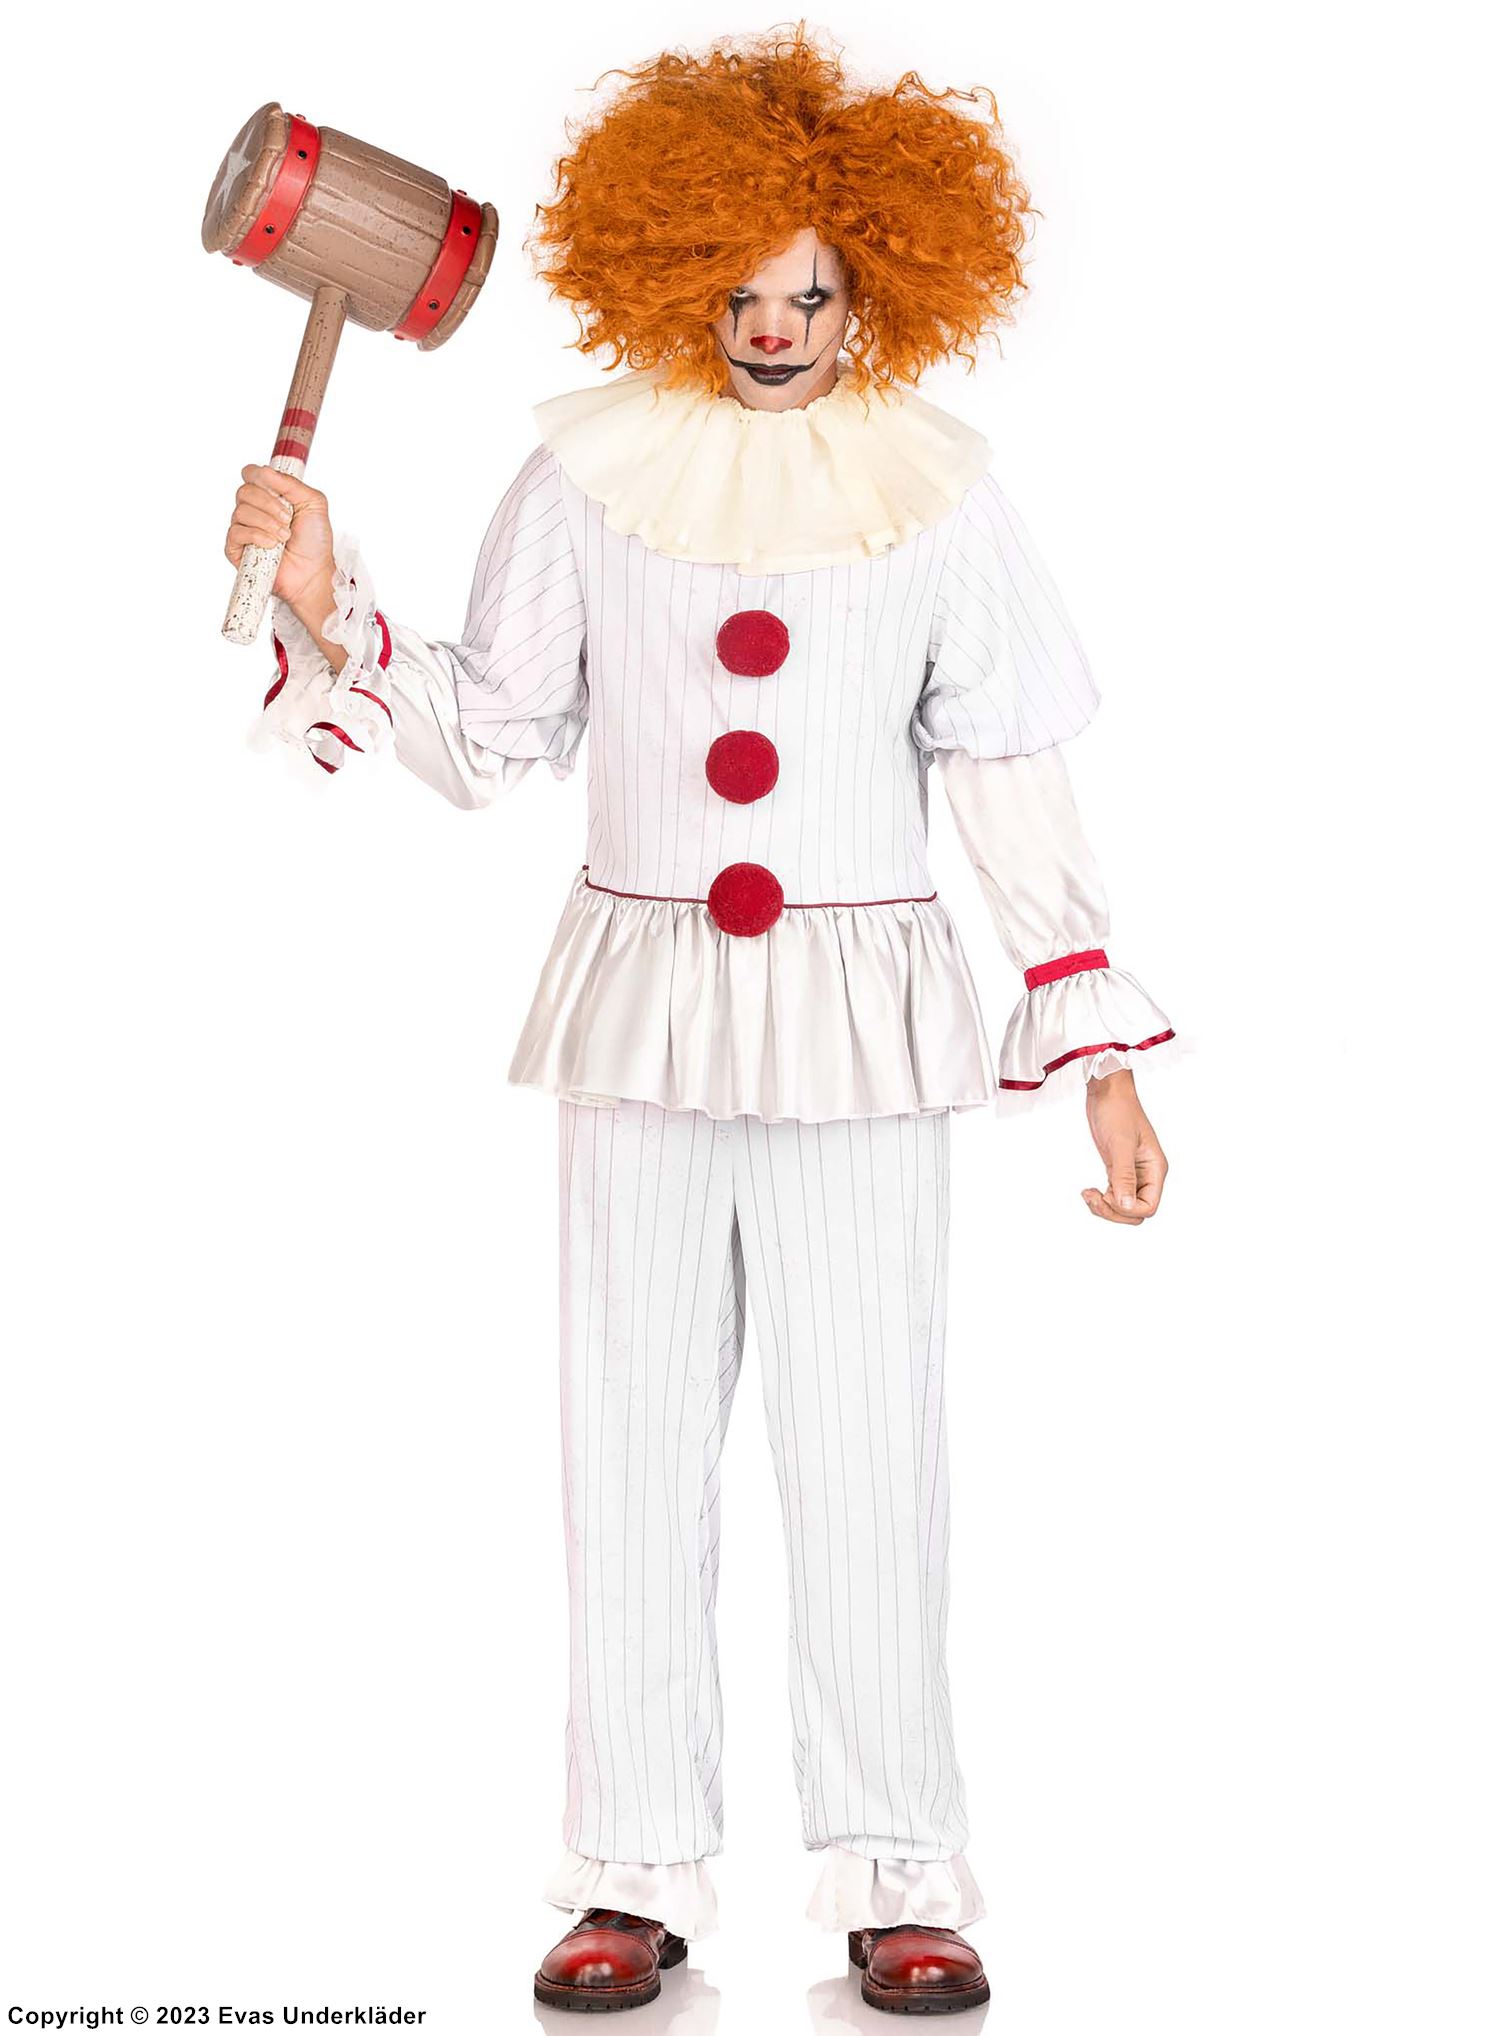 Gruseliger Clown aus "Es", Kostüm-Oberteil und -Hose, Rüschen, lange Ärmel, Bommelknöpfe